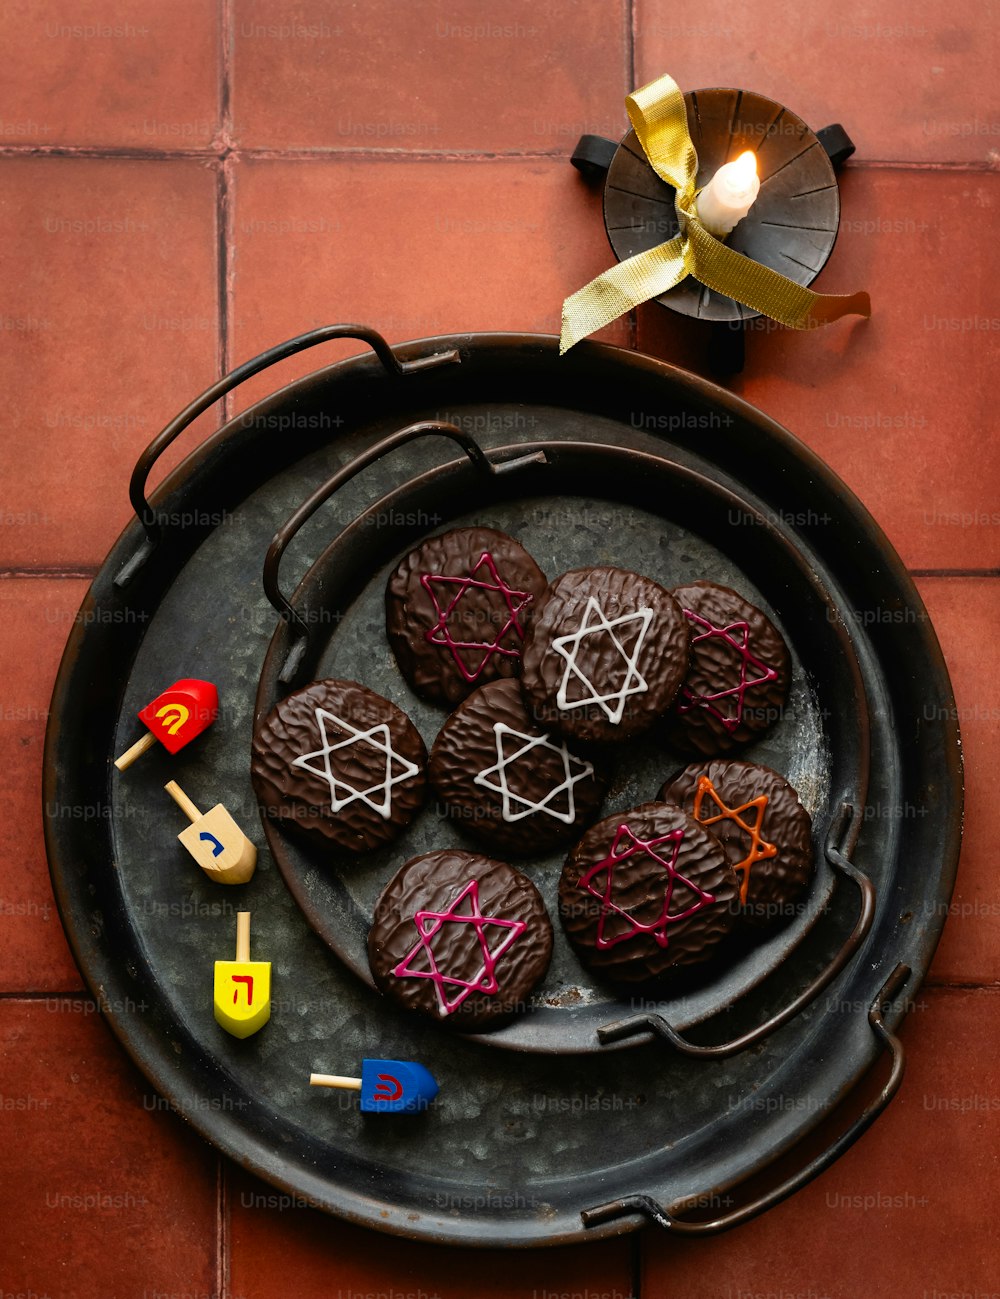 Un piatto di biscotti decorato con la stella di David